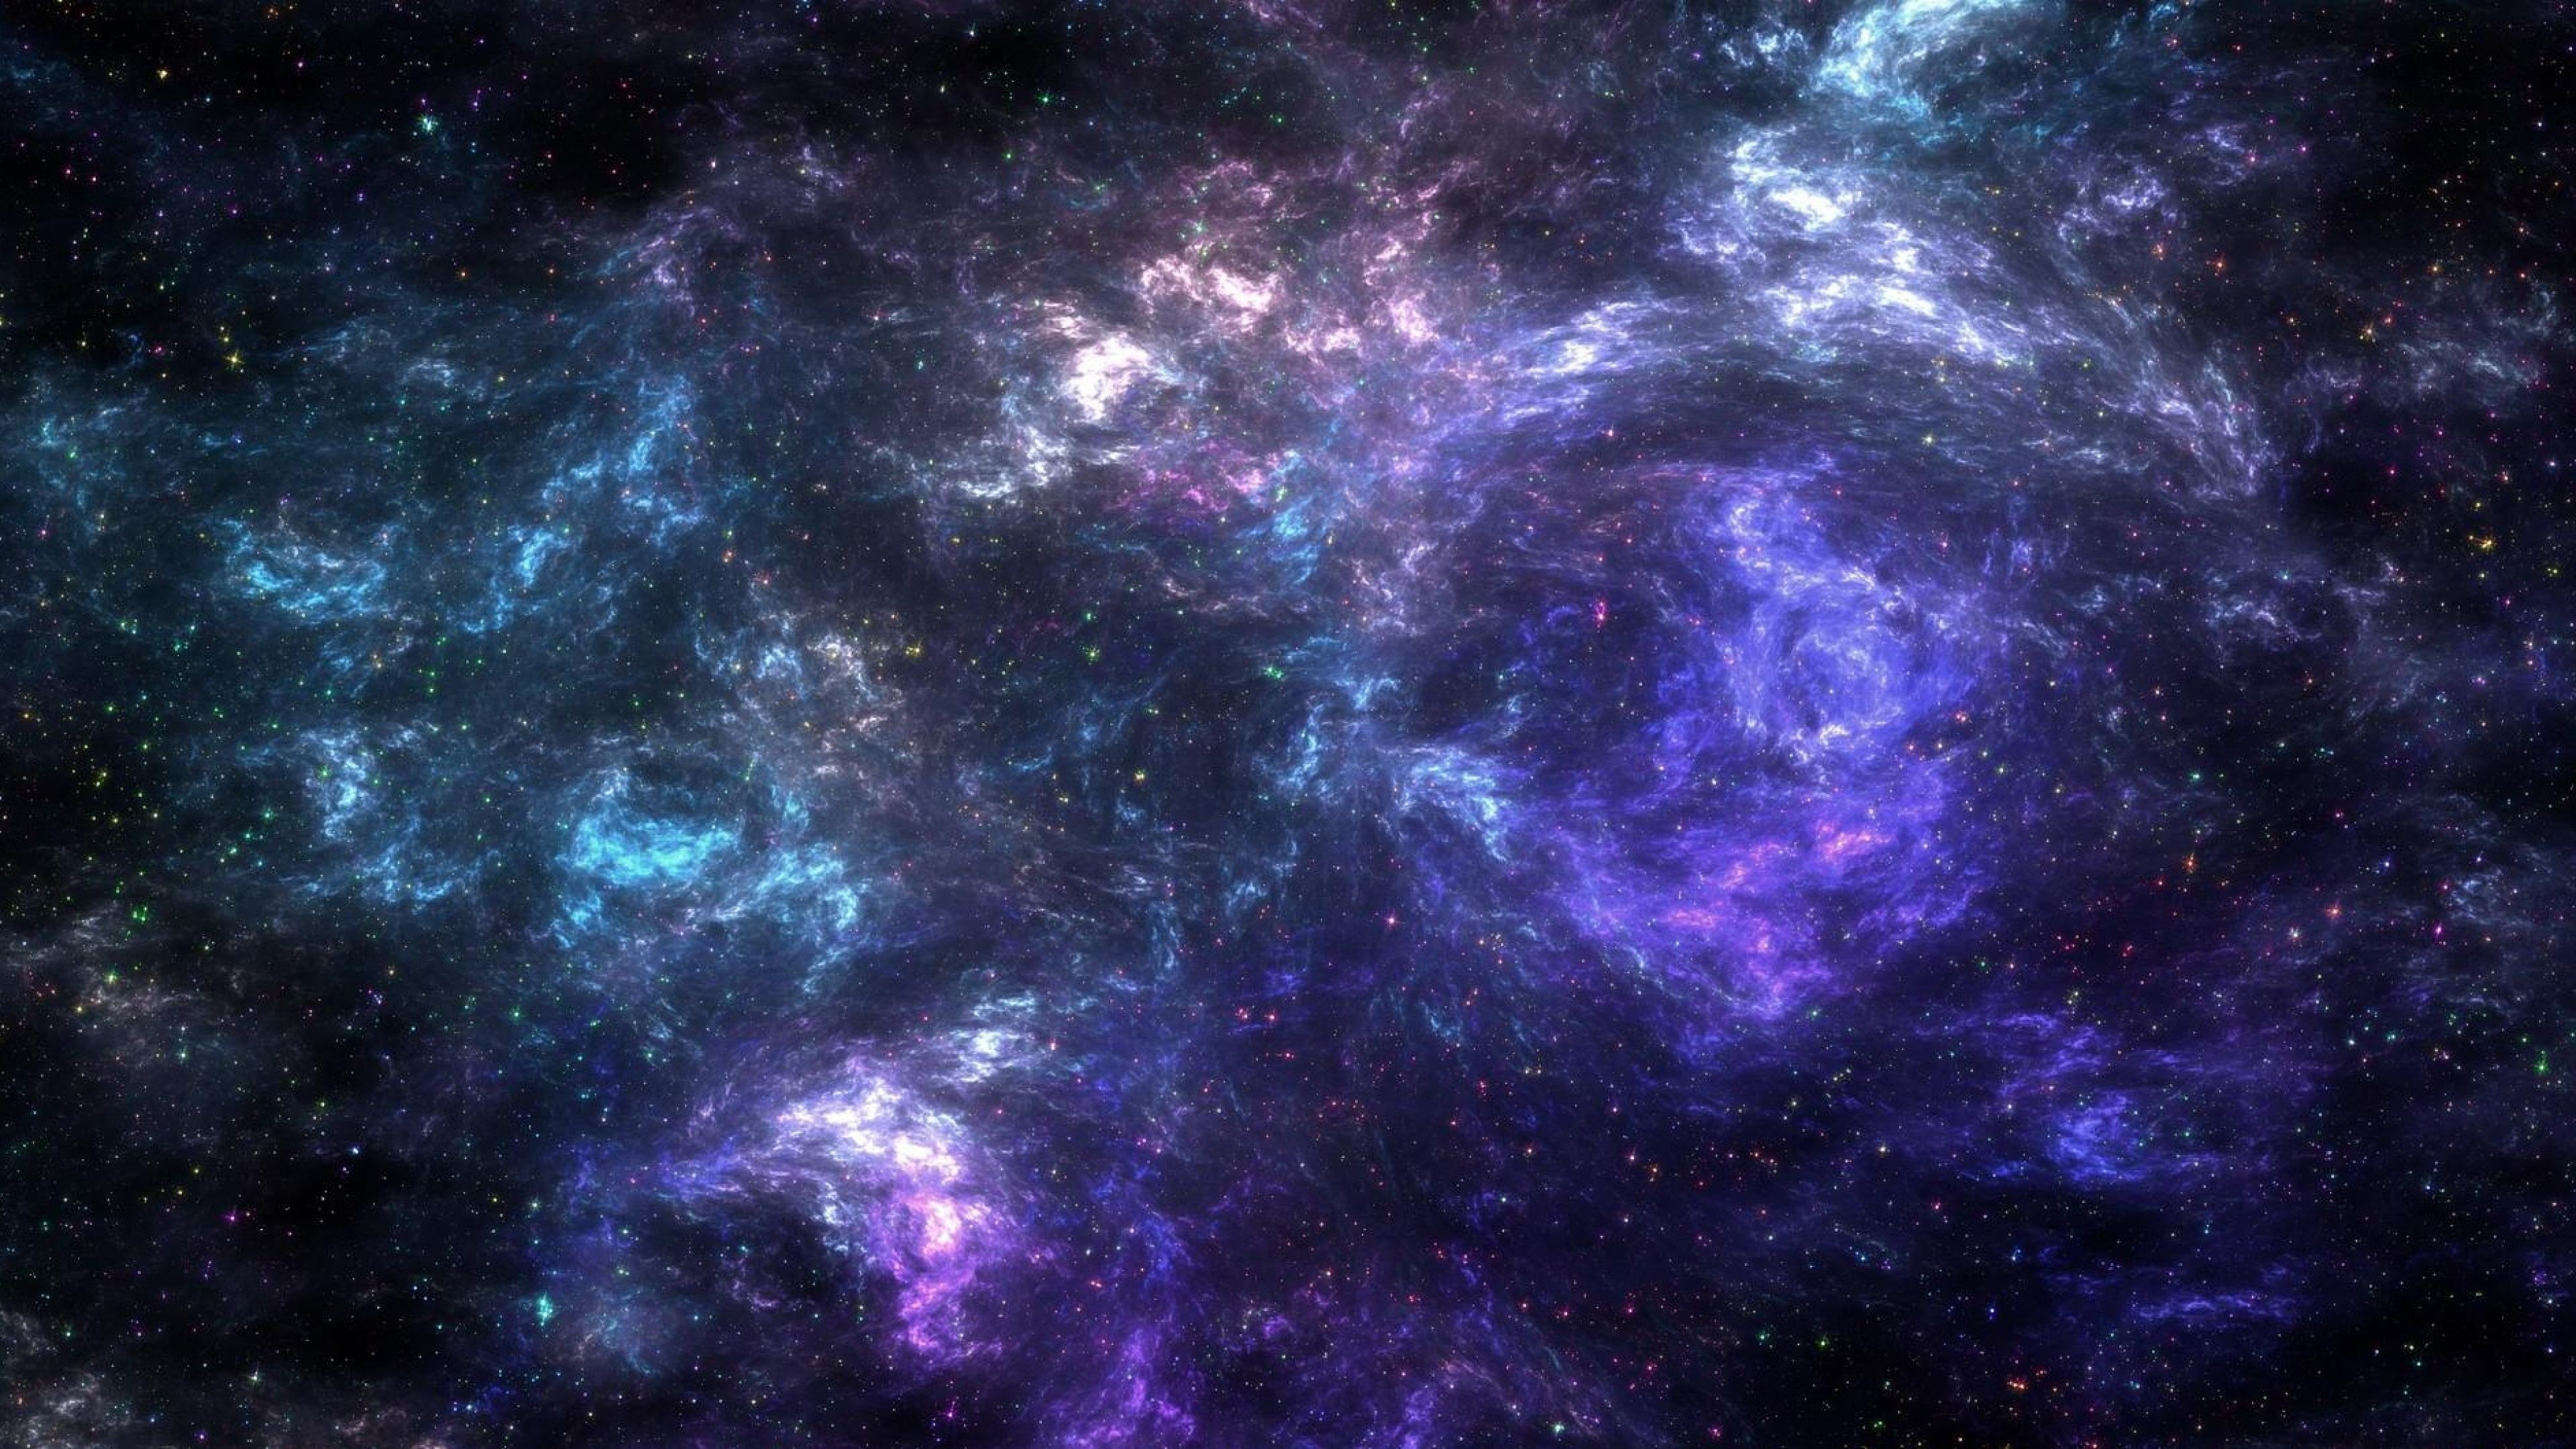 3840x2160  Nebula 4k Ultra HD Wallpaper and Background Image |  |  ID .